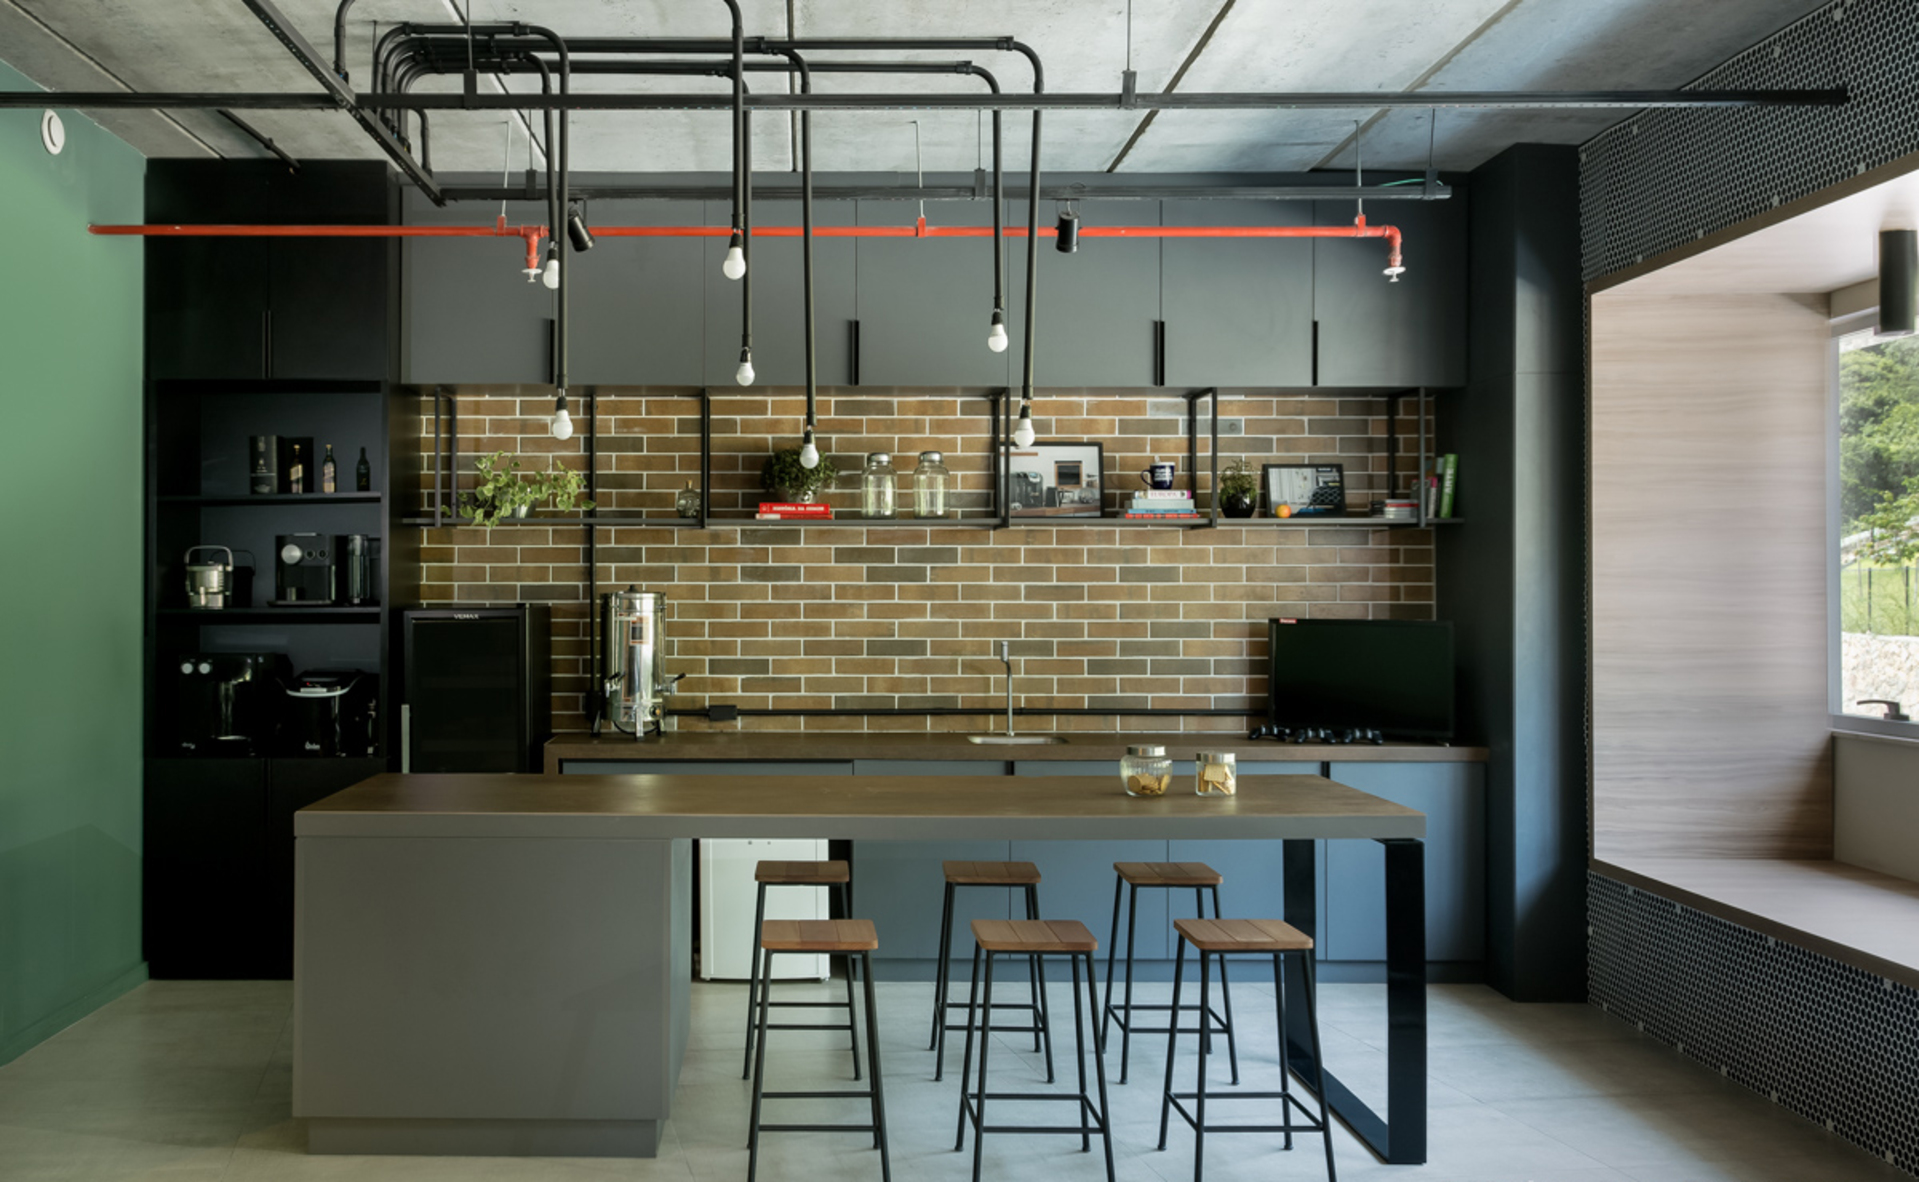 Cozinha estilo industrial com armários pretos, ilha em madeira, banquetas, luminária e revestimento que lembra tijolinhos na parede